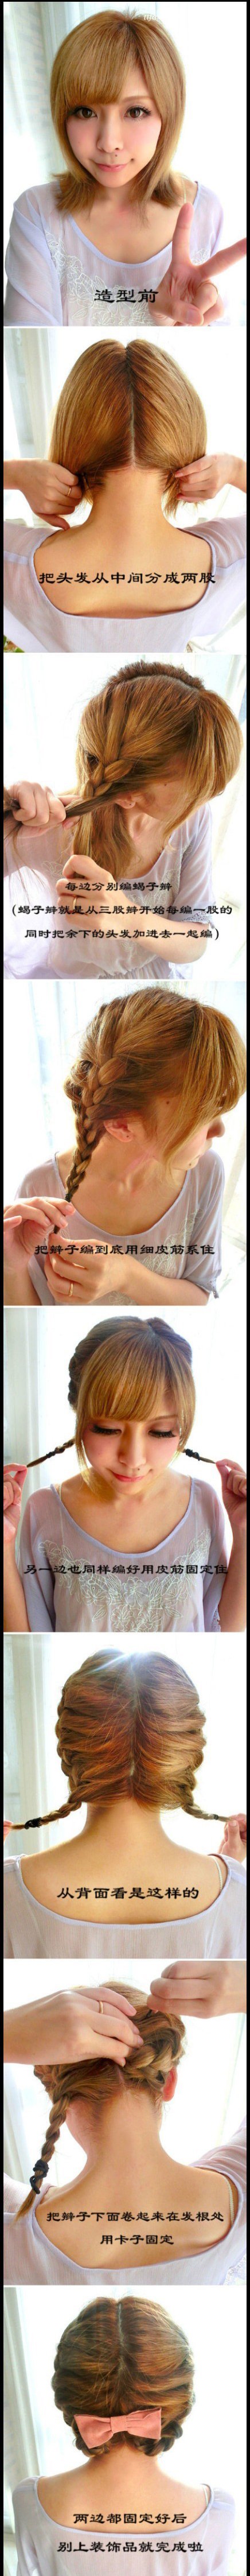 【发型教程】不论你是长发还是短发，都可以编这样的发型哦！很淑 zaoxingkong.com